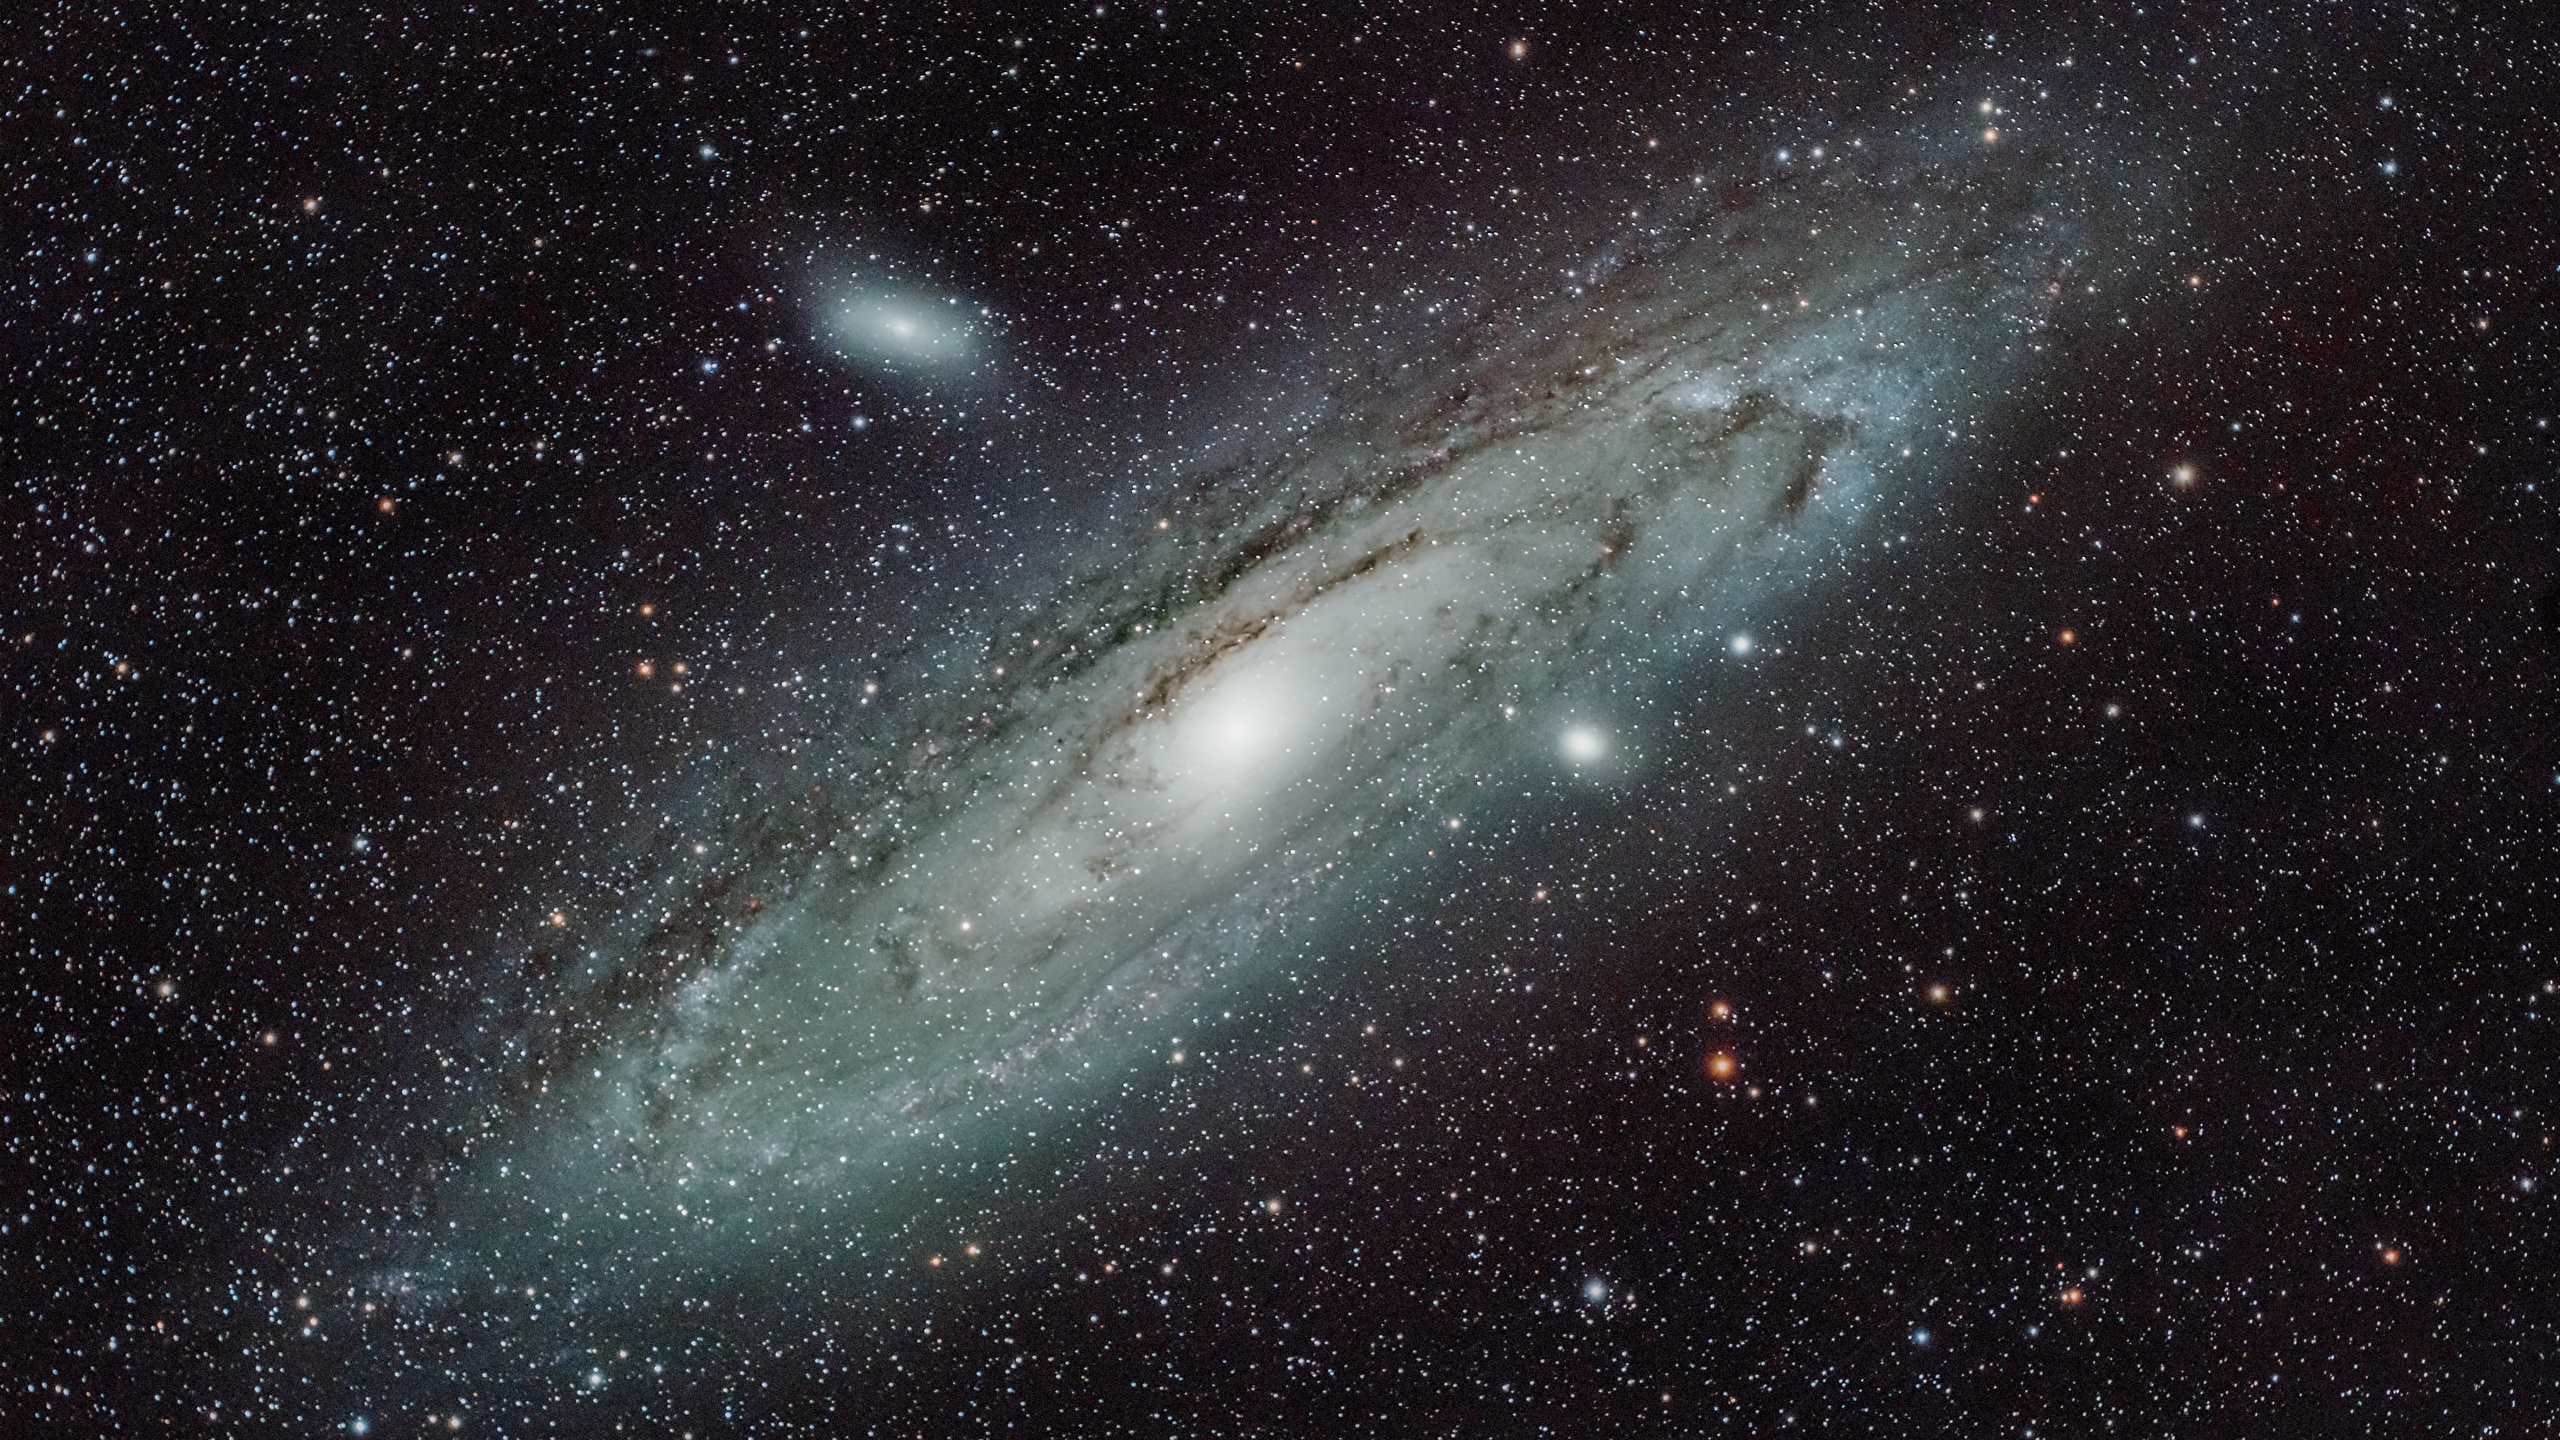 壁紙 2560x1440 銀河 M 31 Andromeda Galaxy 宇宙空間 ダウンロード 写真